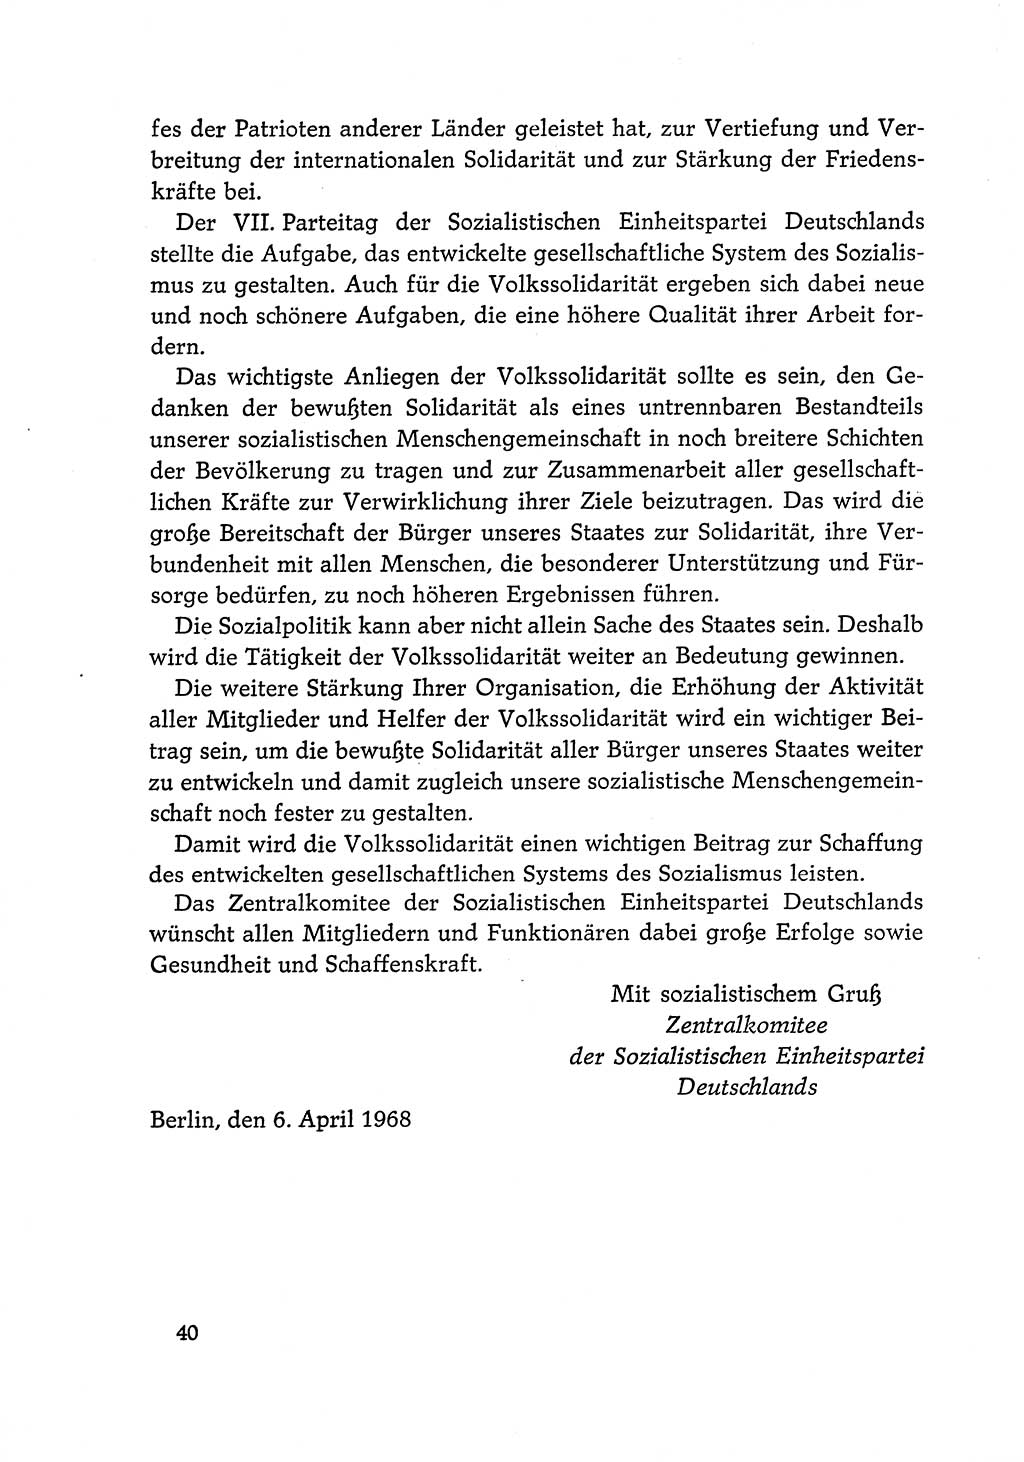 Dokumente der Sozialistischen Einheitspartei Deutschlands (SED) [Deutsche Demokratische Republik (DDR)] 1968-1969, Seite 40 (Dok. SED DDR 1968-1969, S. 40)